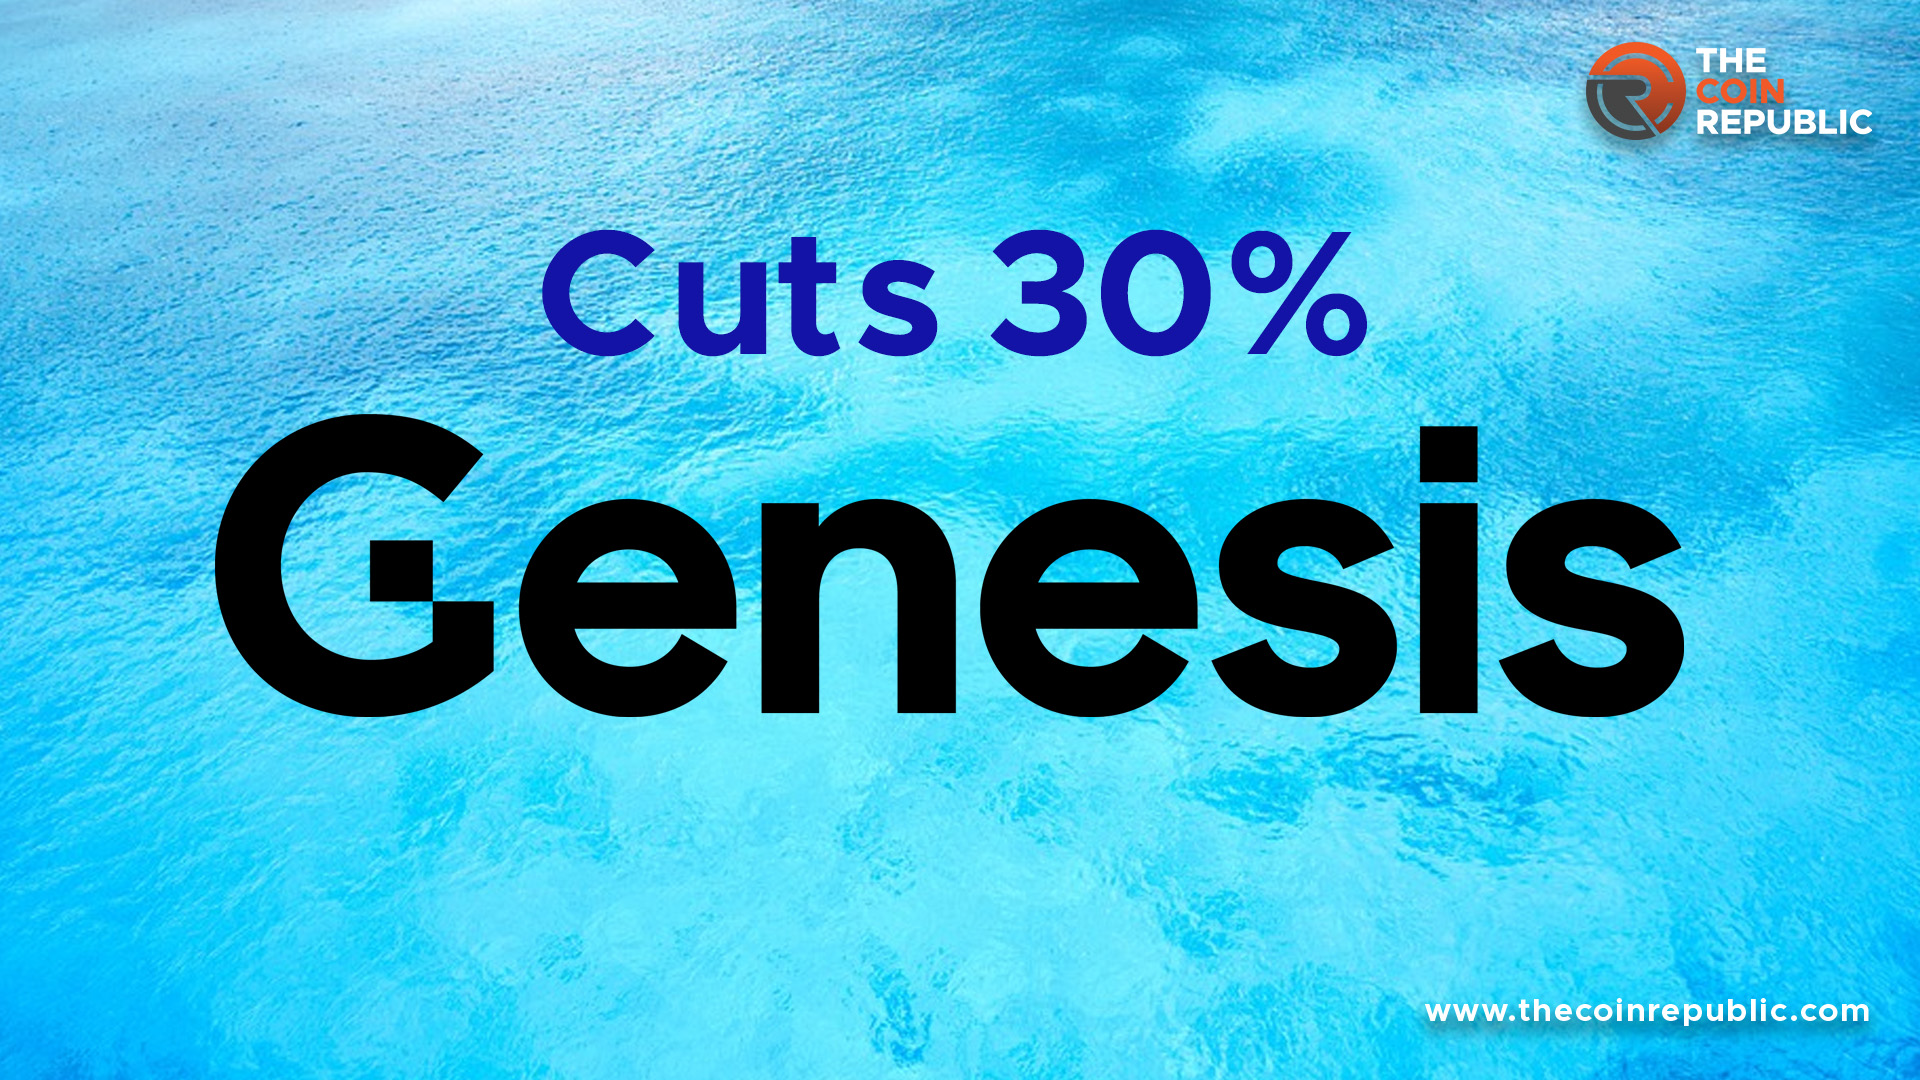 Genesis cuts 30% Workforce in second Round Layoff: Industry under Pressure